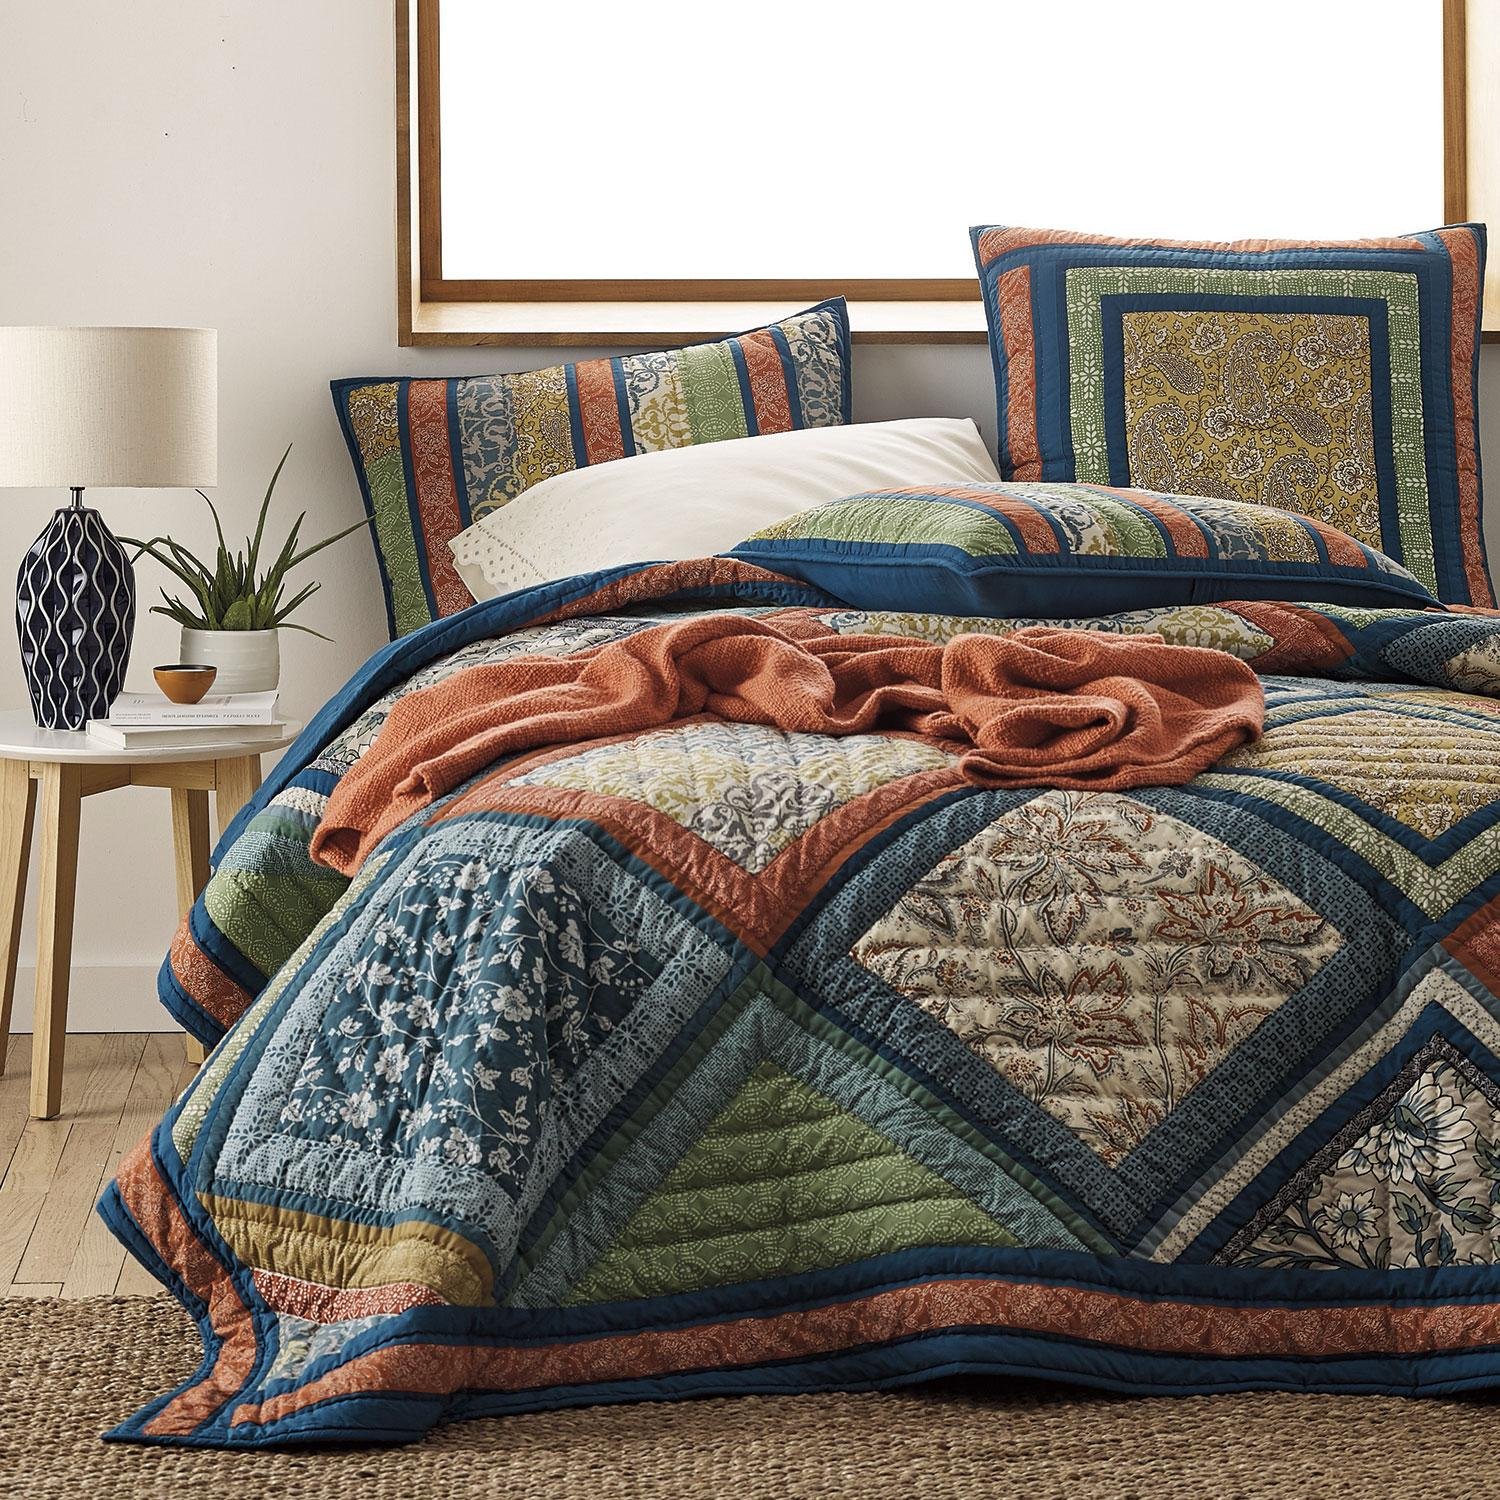 Лоскутные одеяла в стиле пэчворк в интерьере (36 фото)